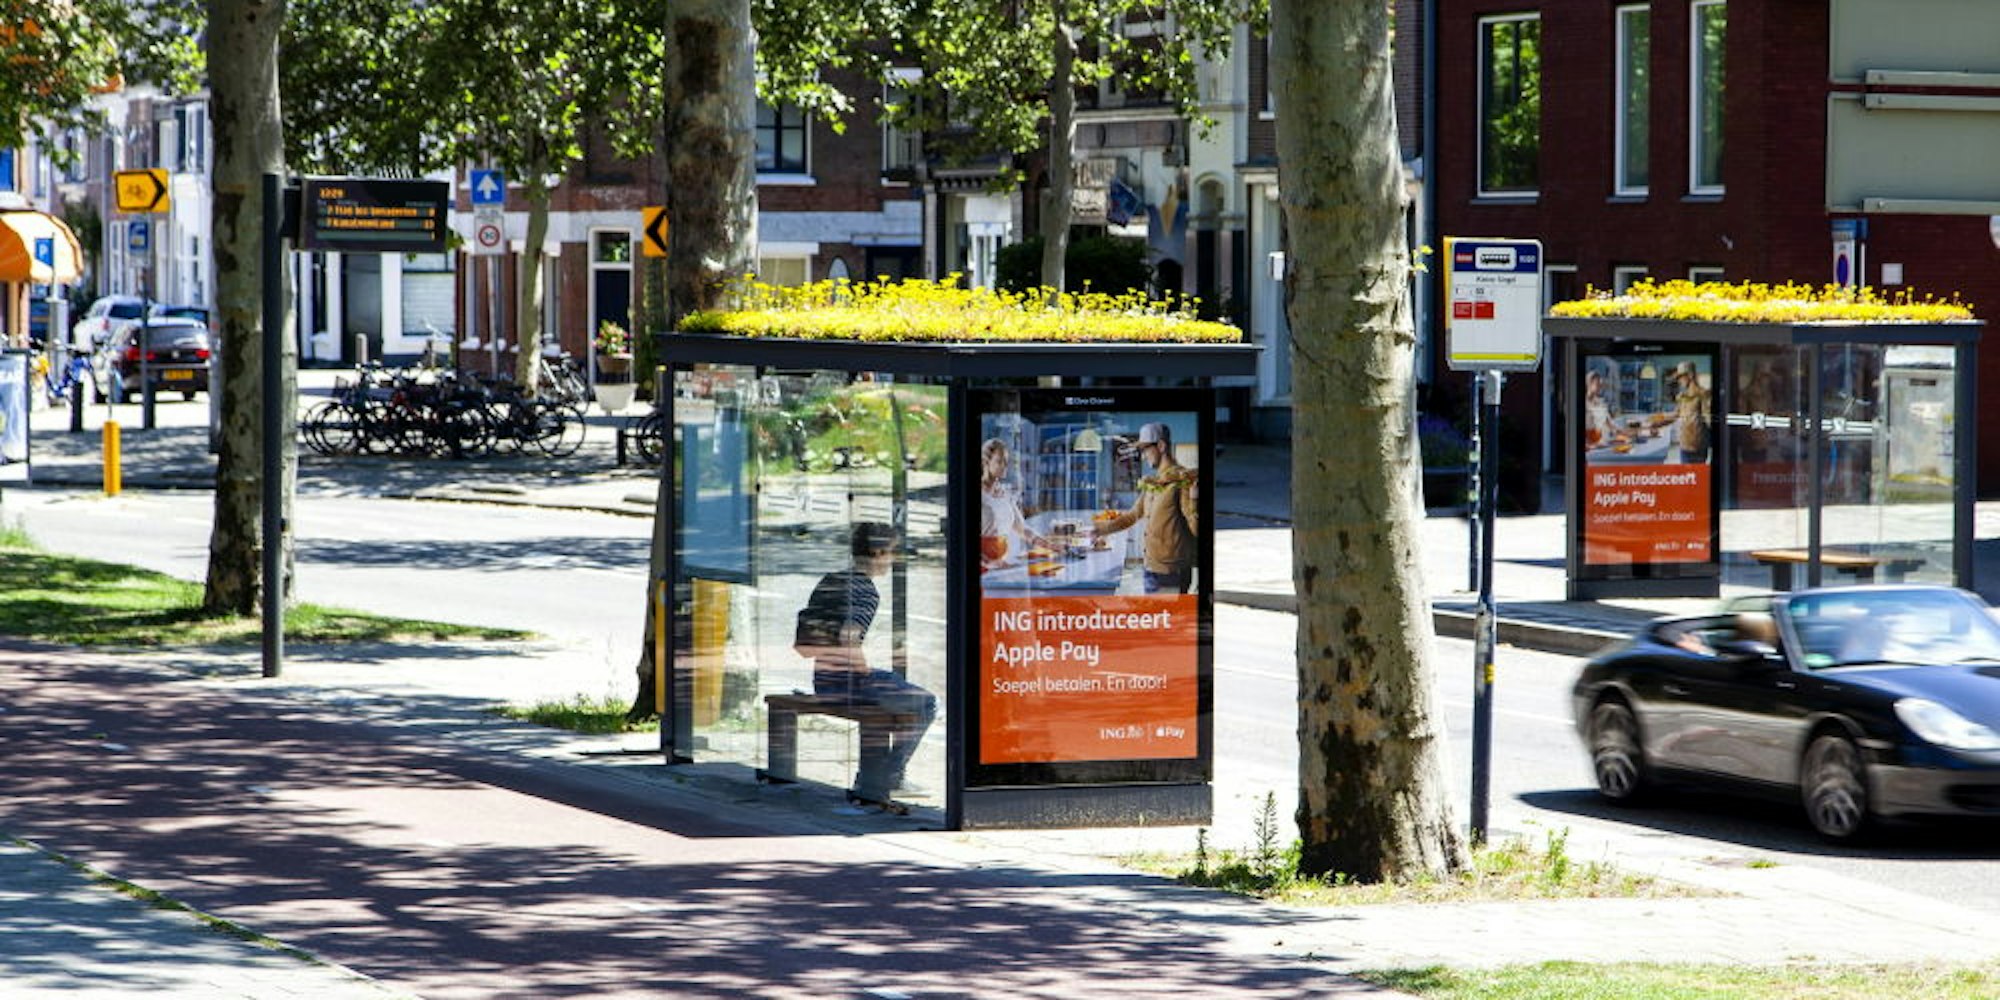 Ein echter Hingucker und ein Gewinn für Stadt: Die begrünten Dächer der Bushaltestellen in Utrecht bieten bedrohten Wildbienen Nahrung.